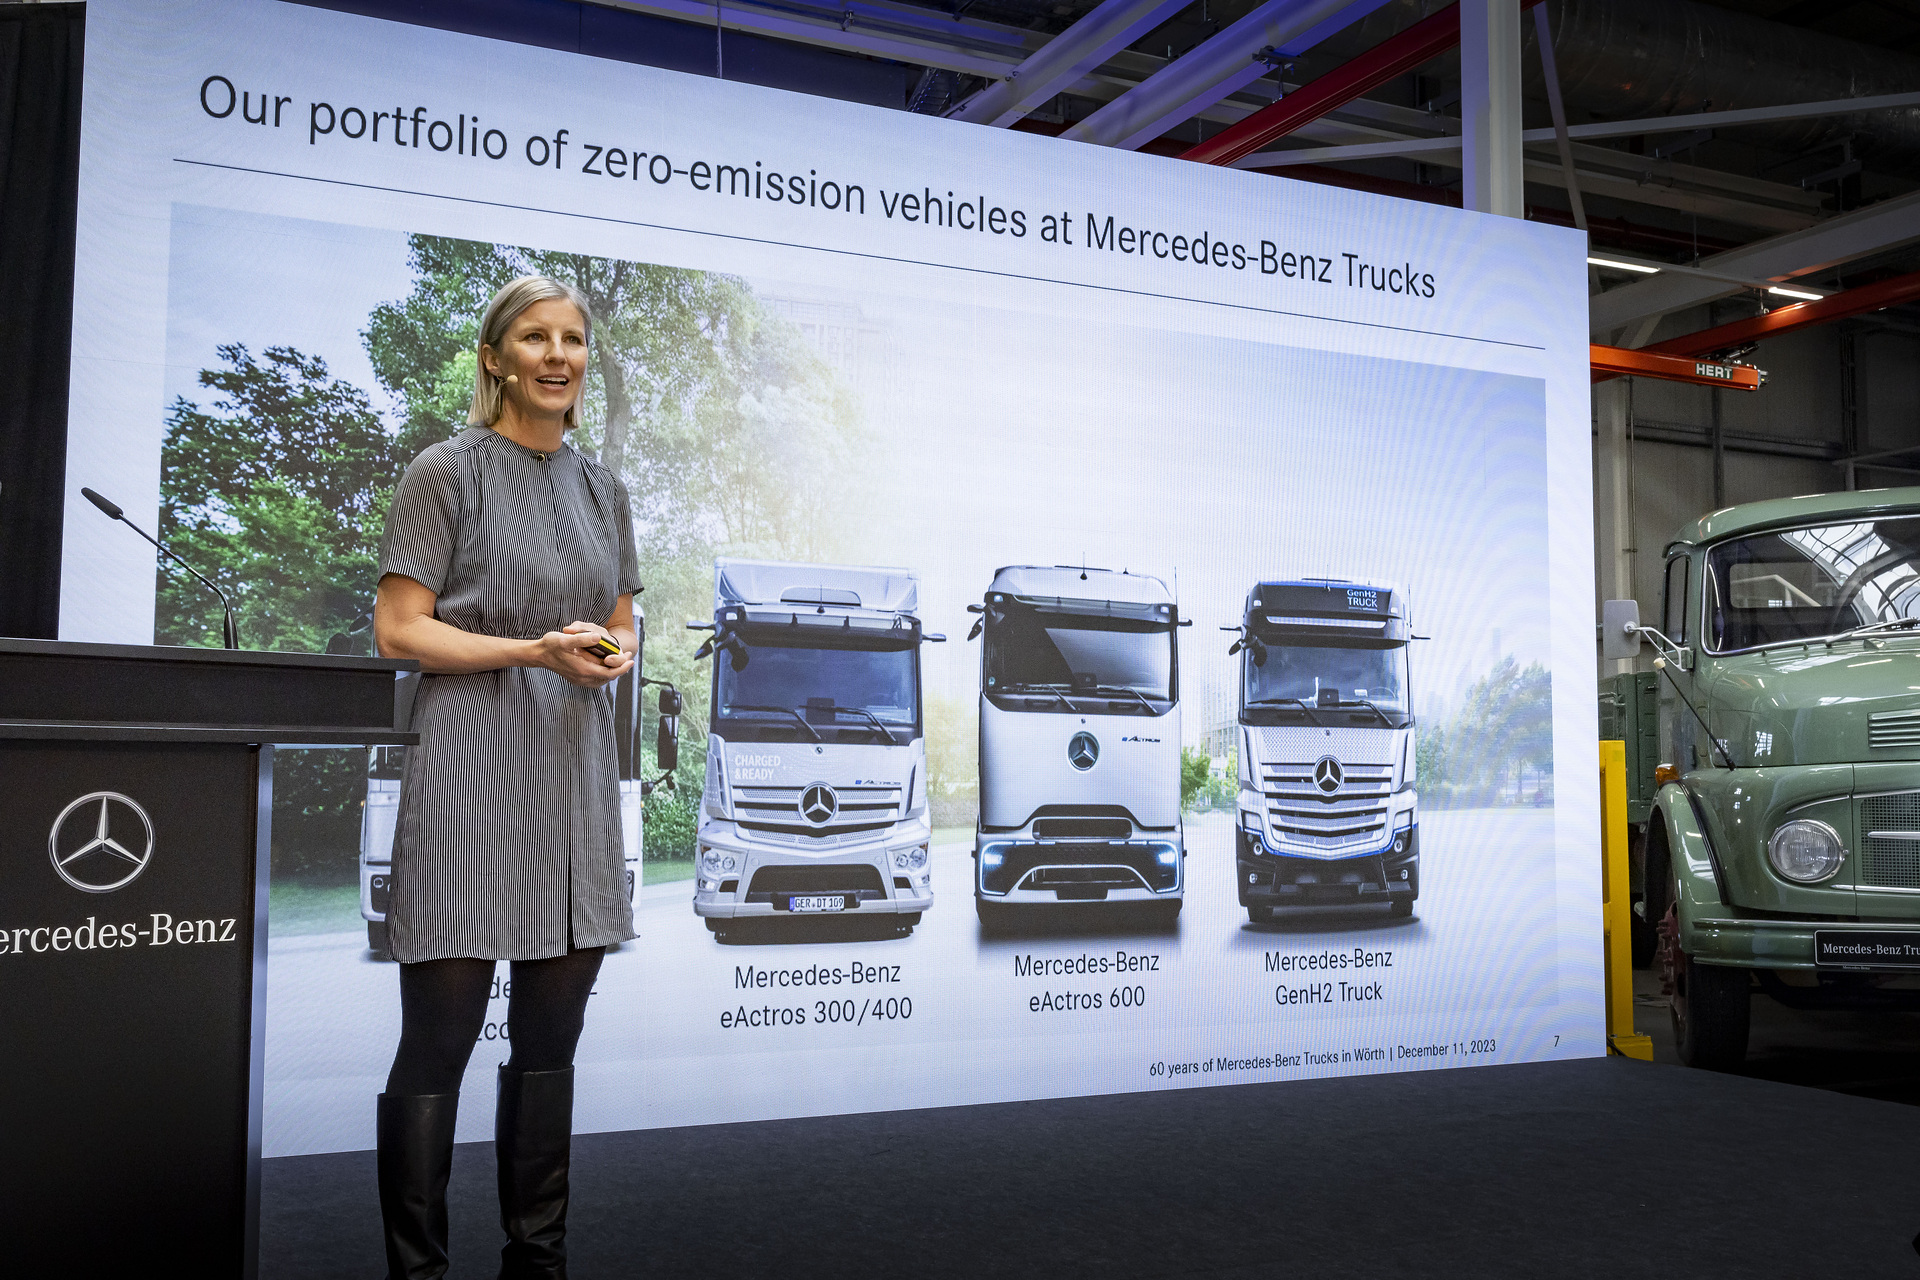 Höhepunkt des Jubiläumsjahres im Mercedes-Benz Werk Wörth: 60 Jahre Tradition – Transformation – Zukunft